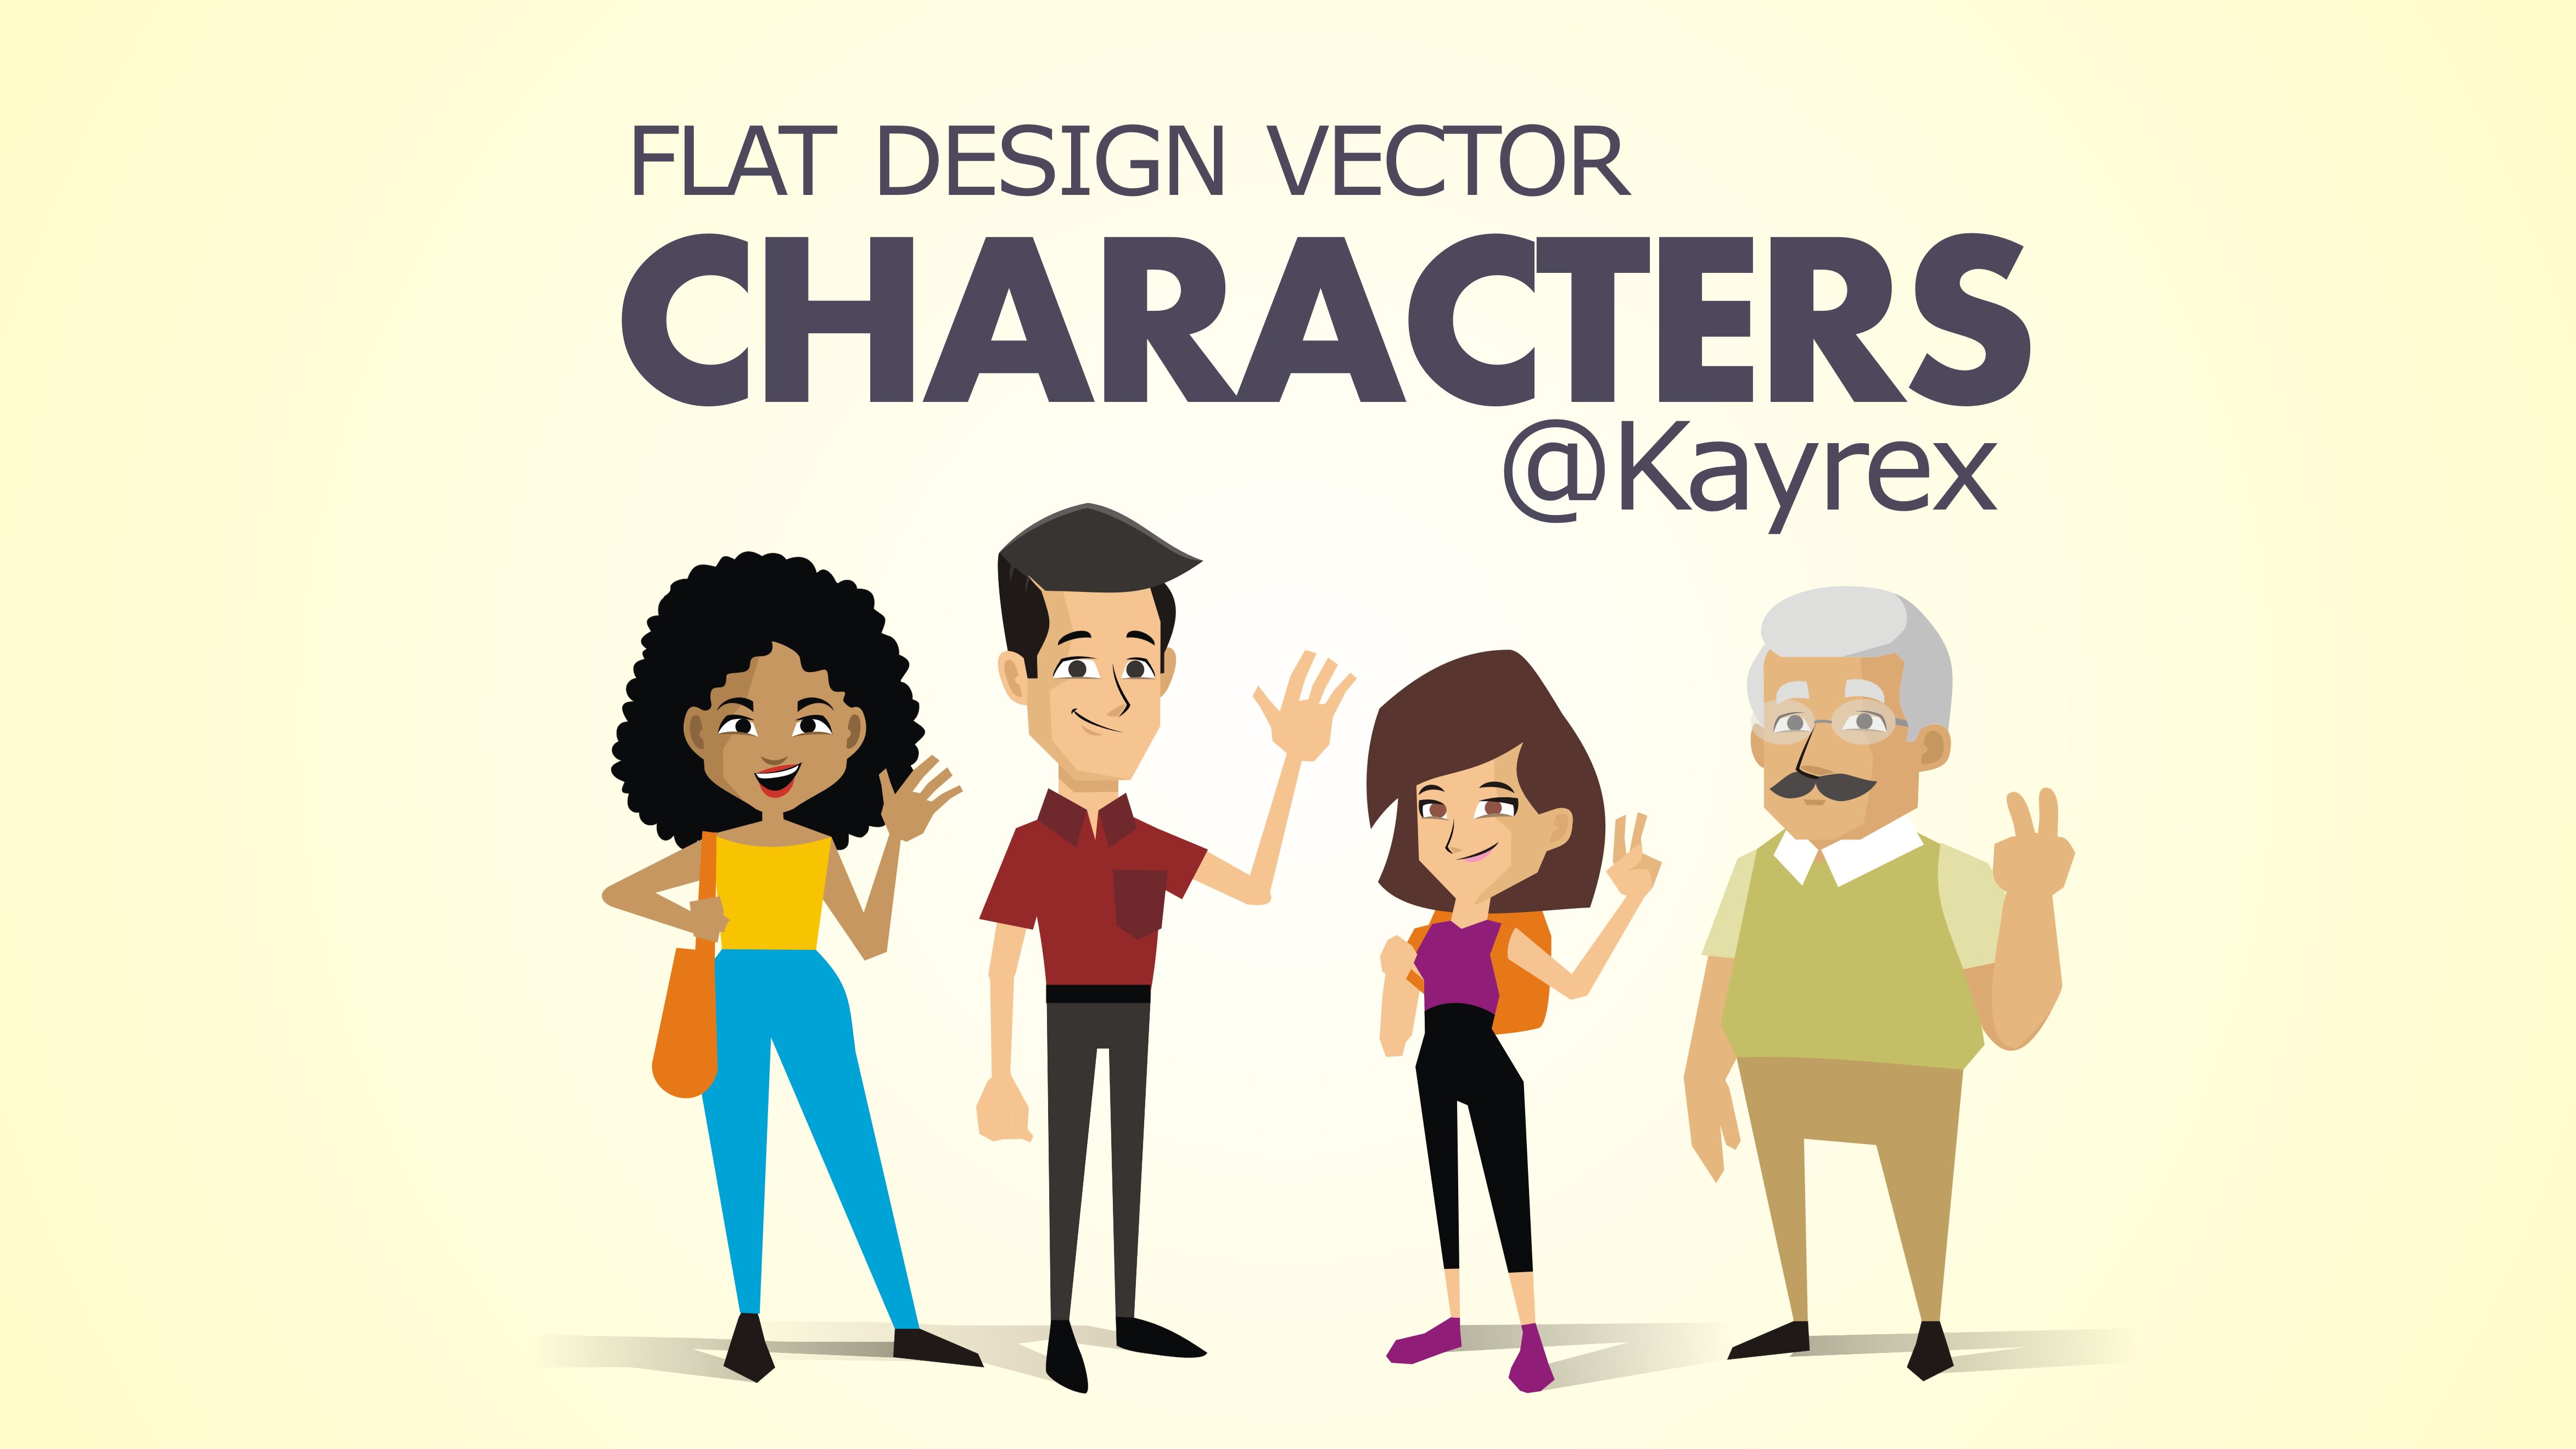 Wonderlijk Design flat design characters by Kayrex UI-16